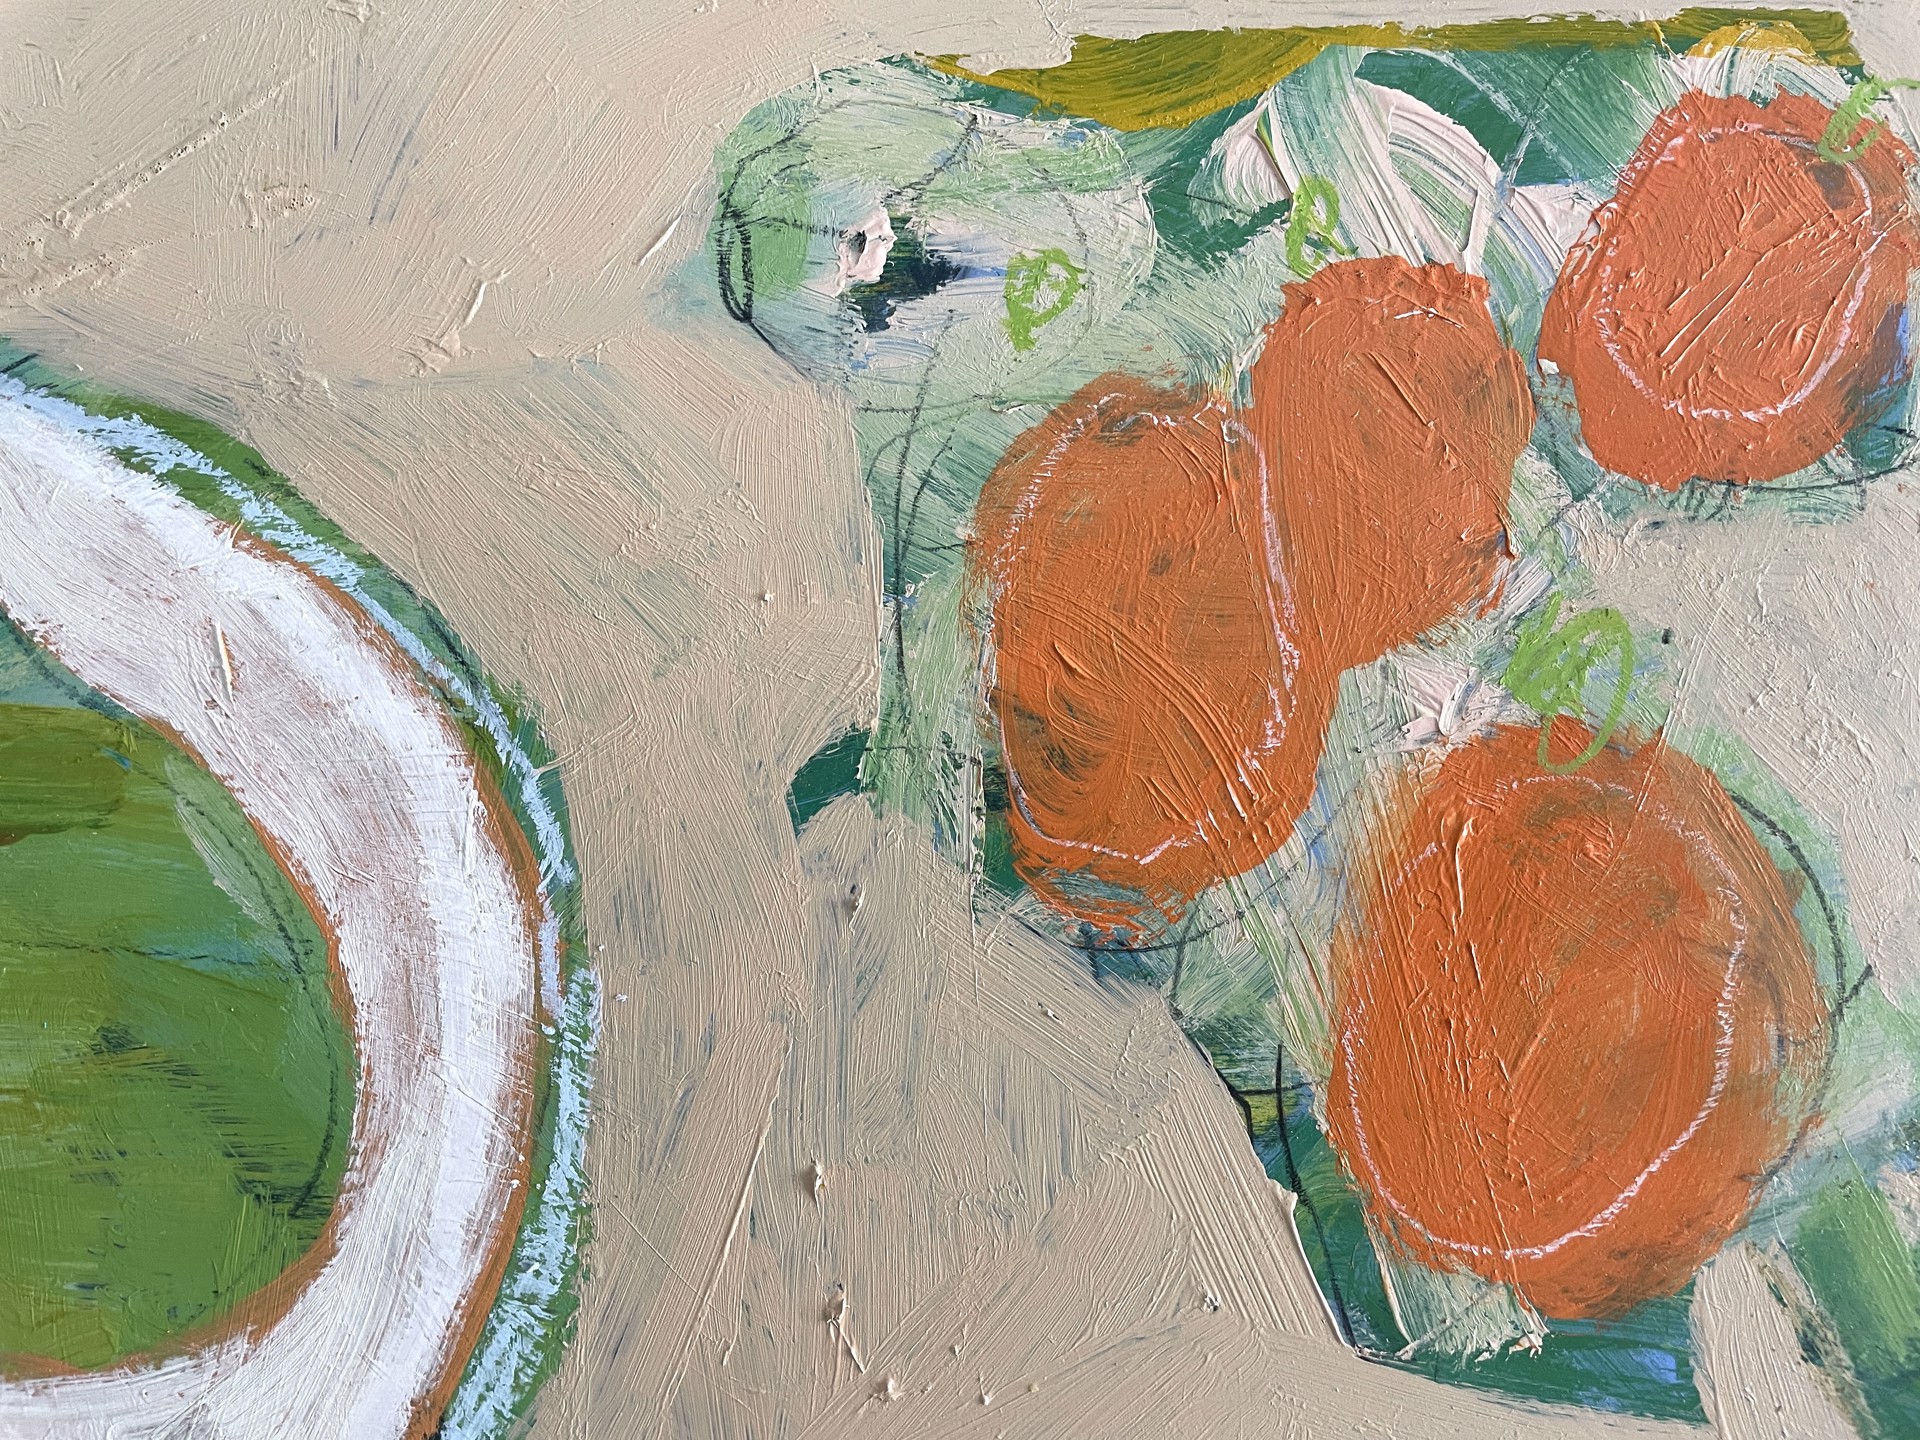 Pears and Oranges on Table by Rachael Van Dyke